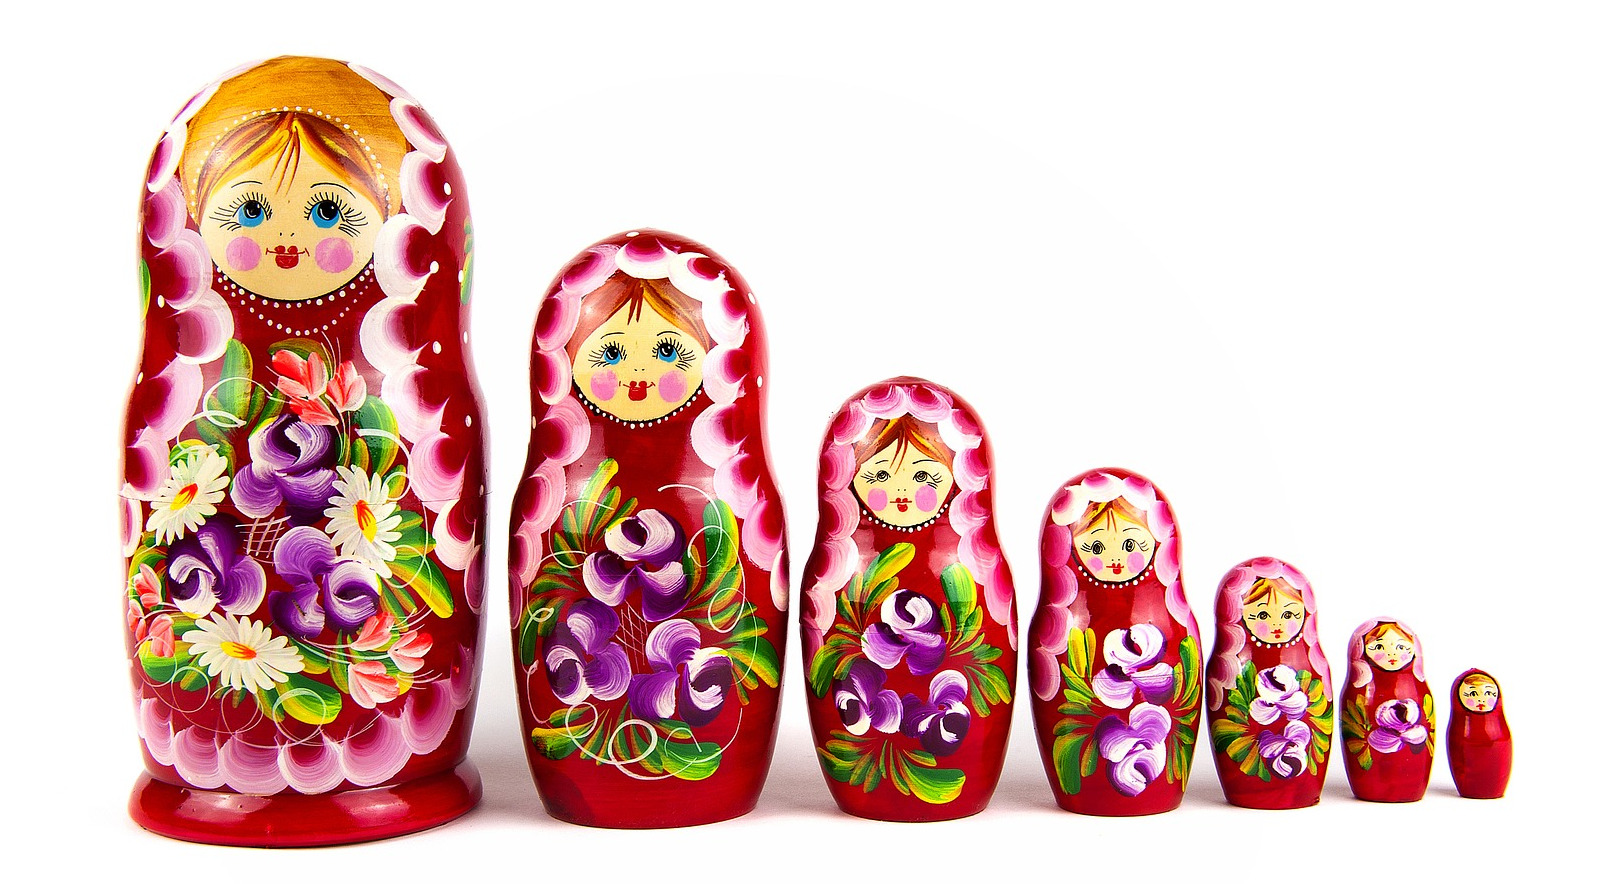 La imagen muestra una matrioshka, una muñeca rusa de madera hueca, que se abre por la mitad y lleva dentro otras seis muñecas similares más pequeñas